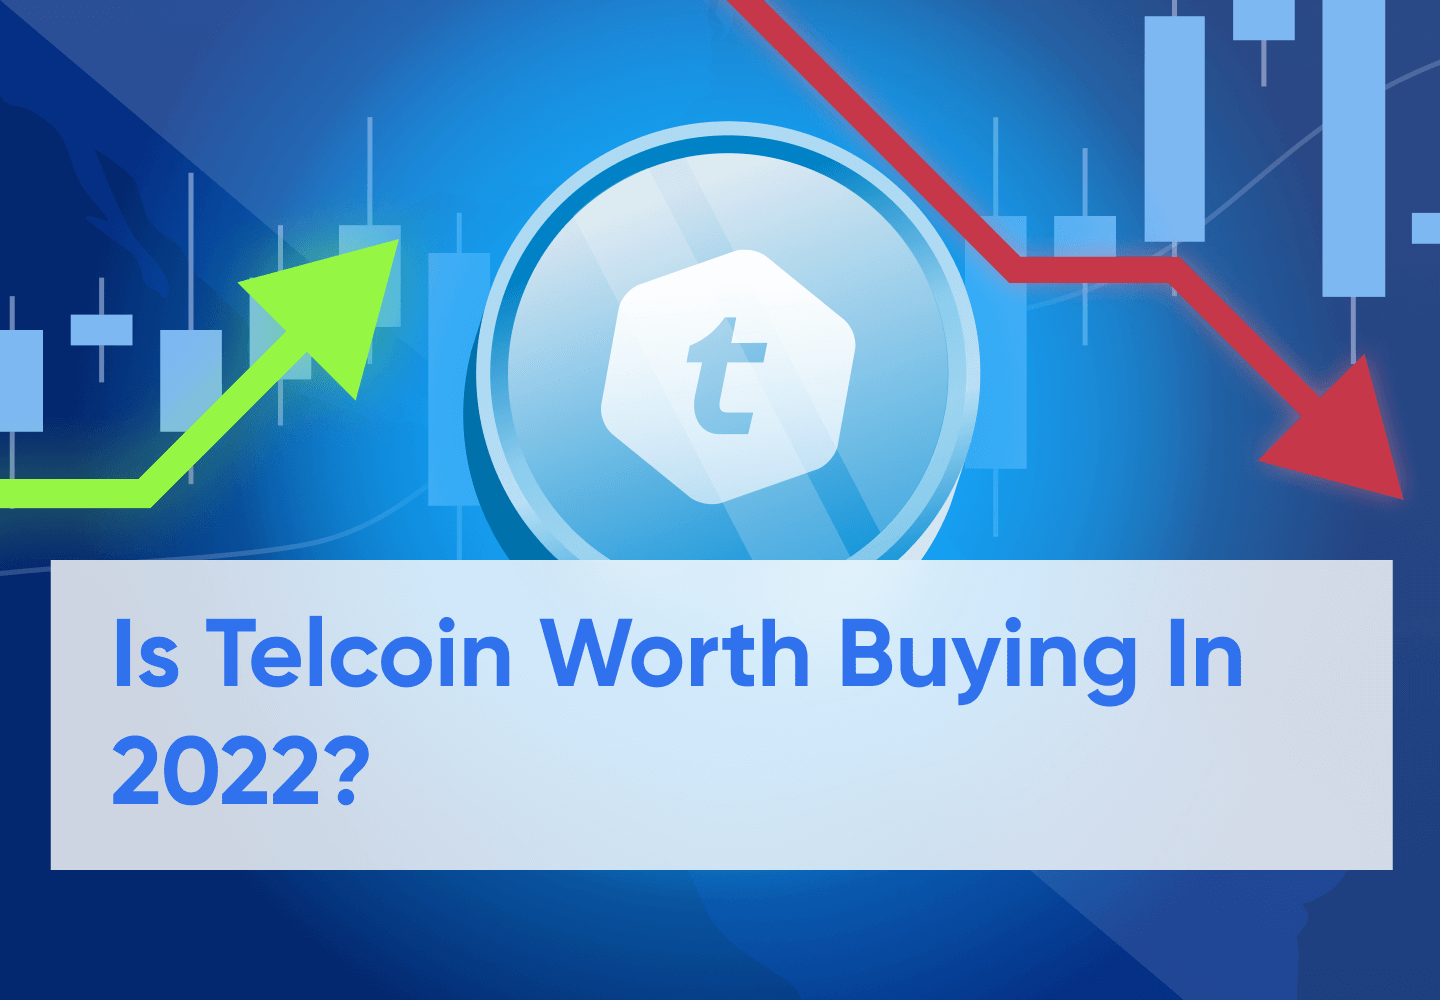 Telcoin Price Prediction 2023 - 2030